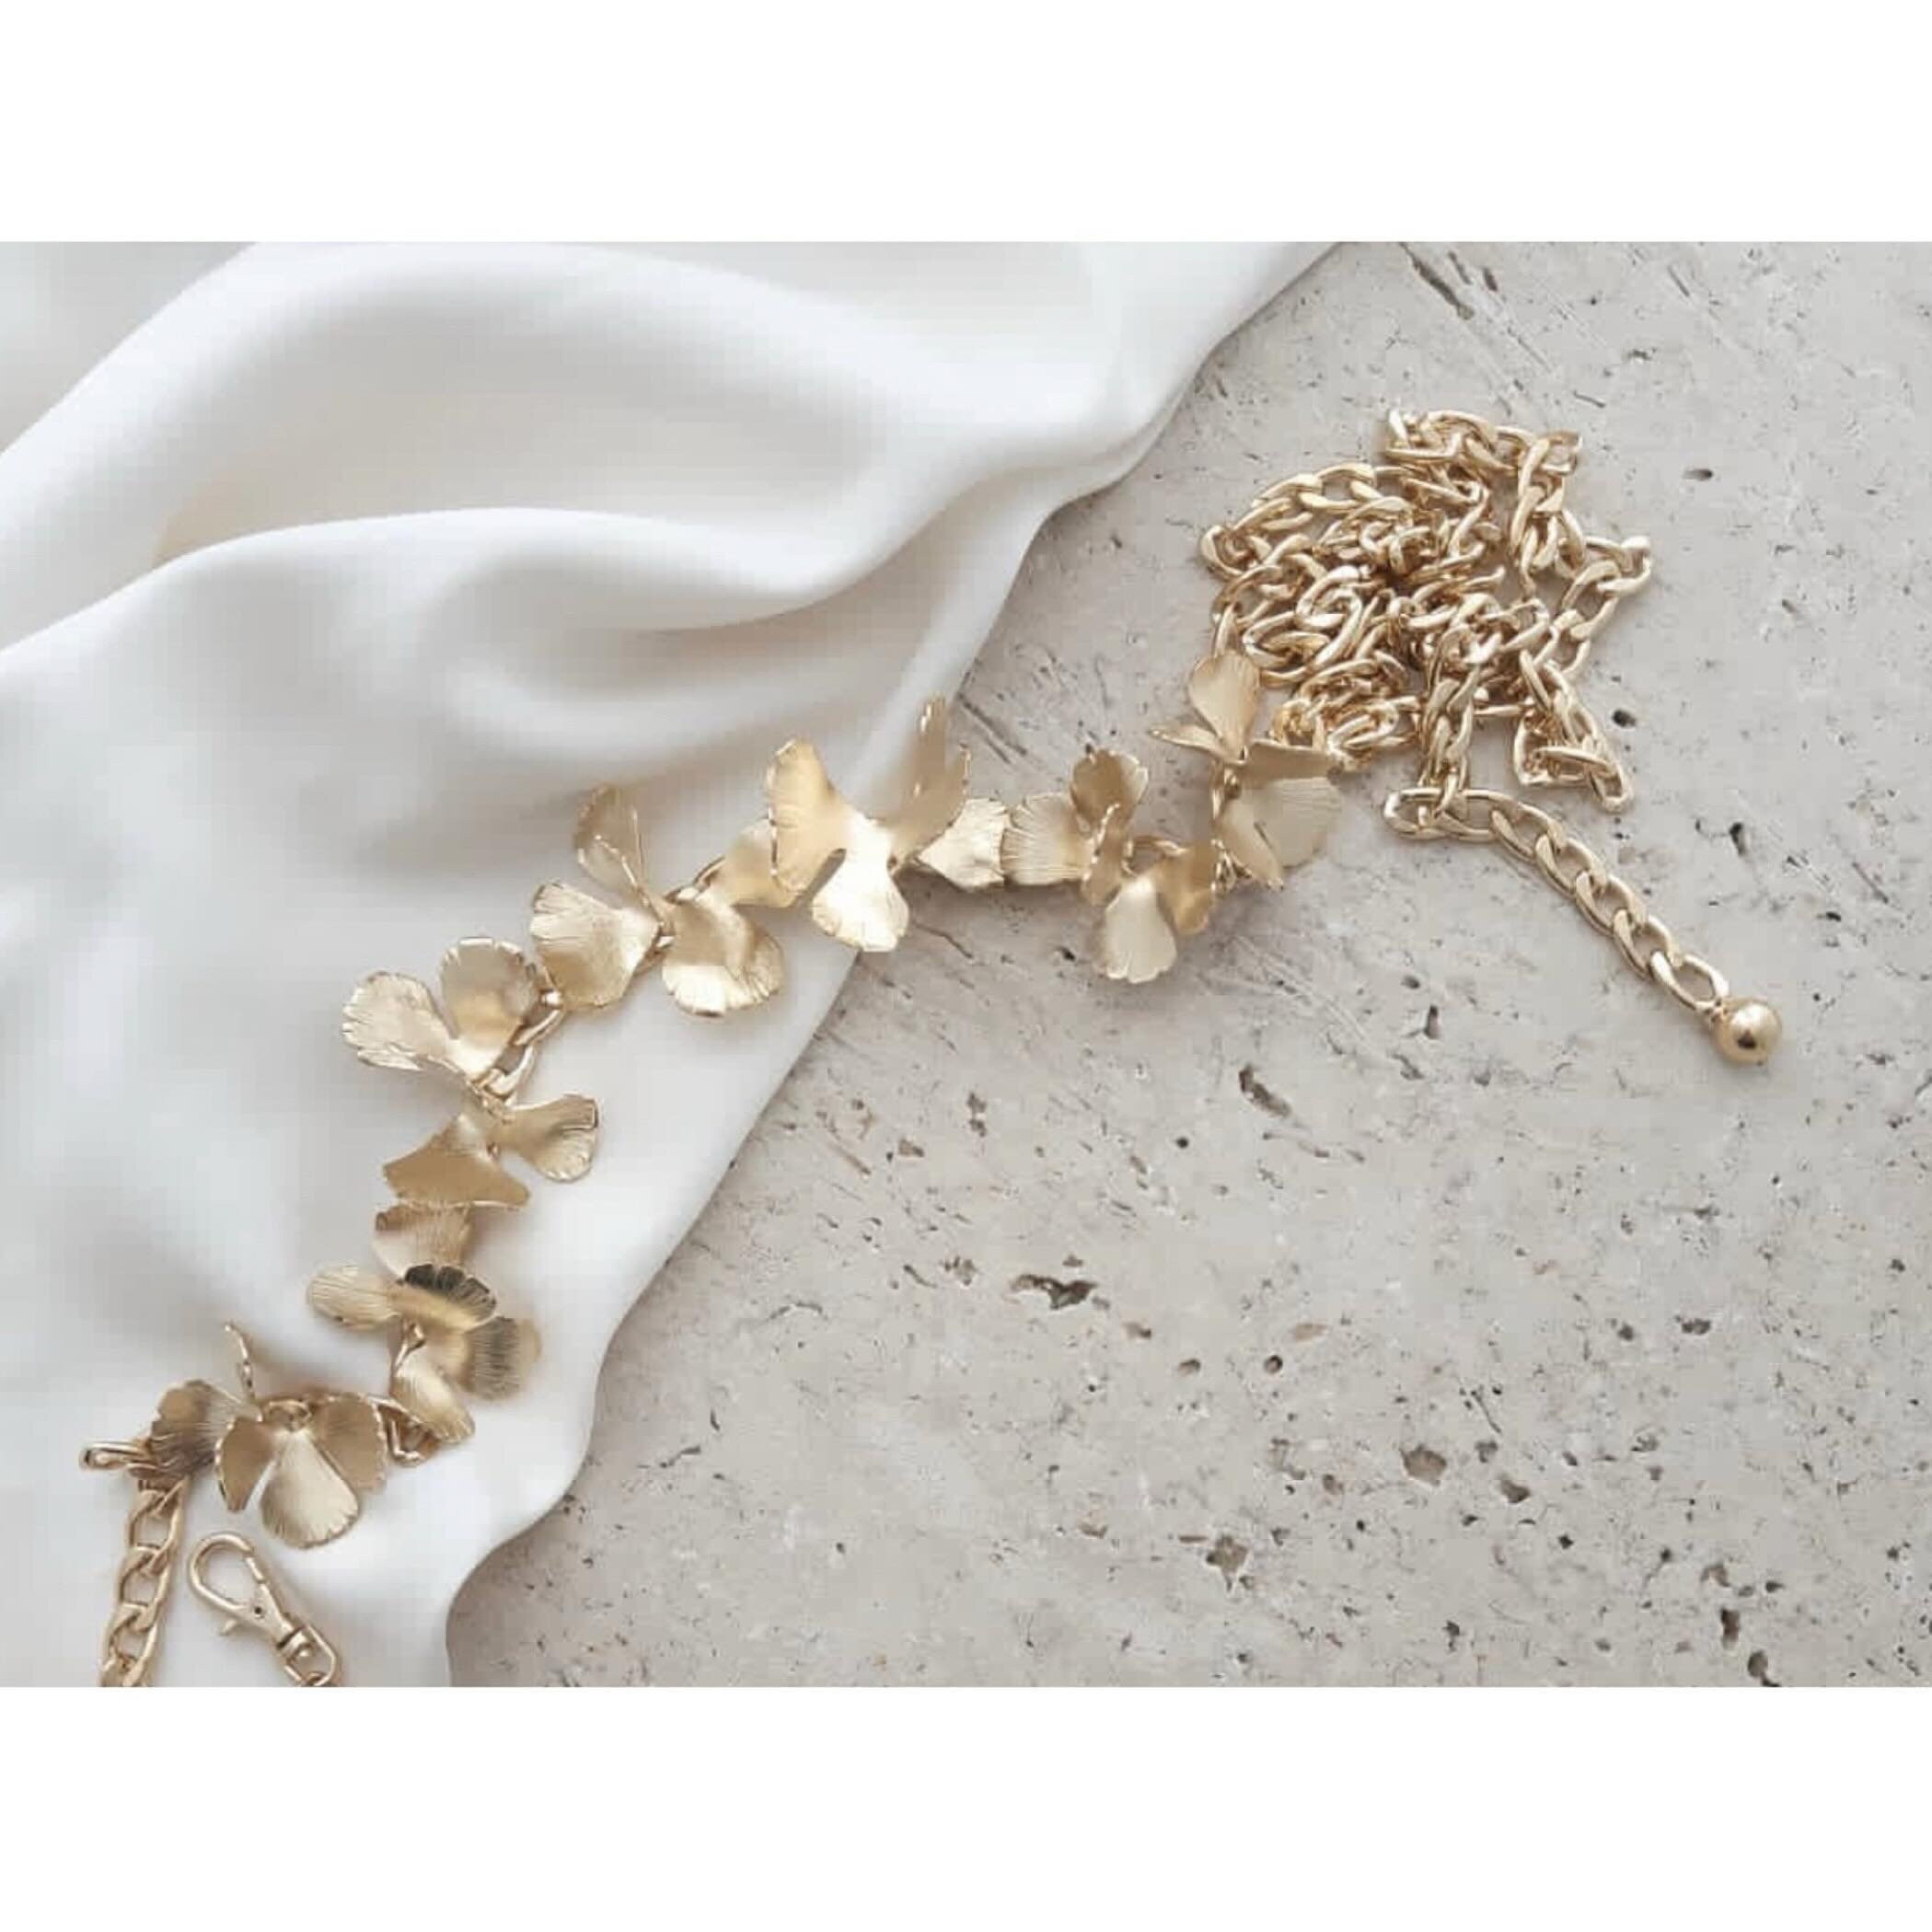 F L E U R I E - Stunning, 24k goldplated belt of deconstructed flowers by @maisonsabben, available at @whitebygreen. ⠀⠀ ⠀
⠀⠀ ⠀
#whitebygreen #brudesalong #brudekjole #brudekjoleoslo #brud #bryllup #smykker #bride #bridal #modernbride #weddingdress #w